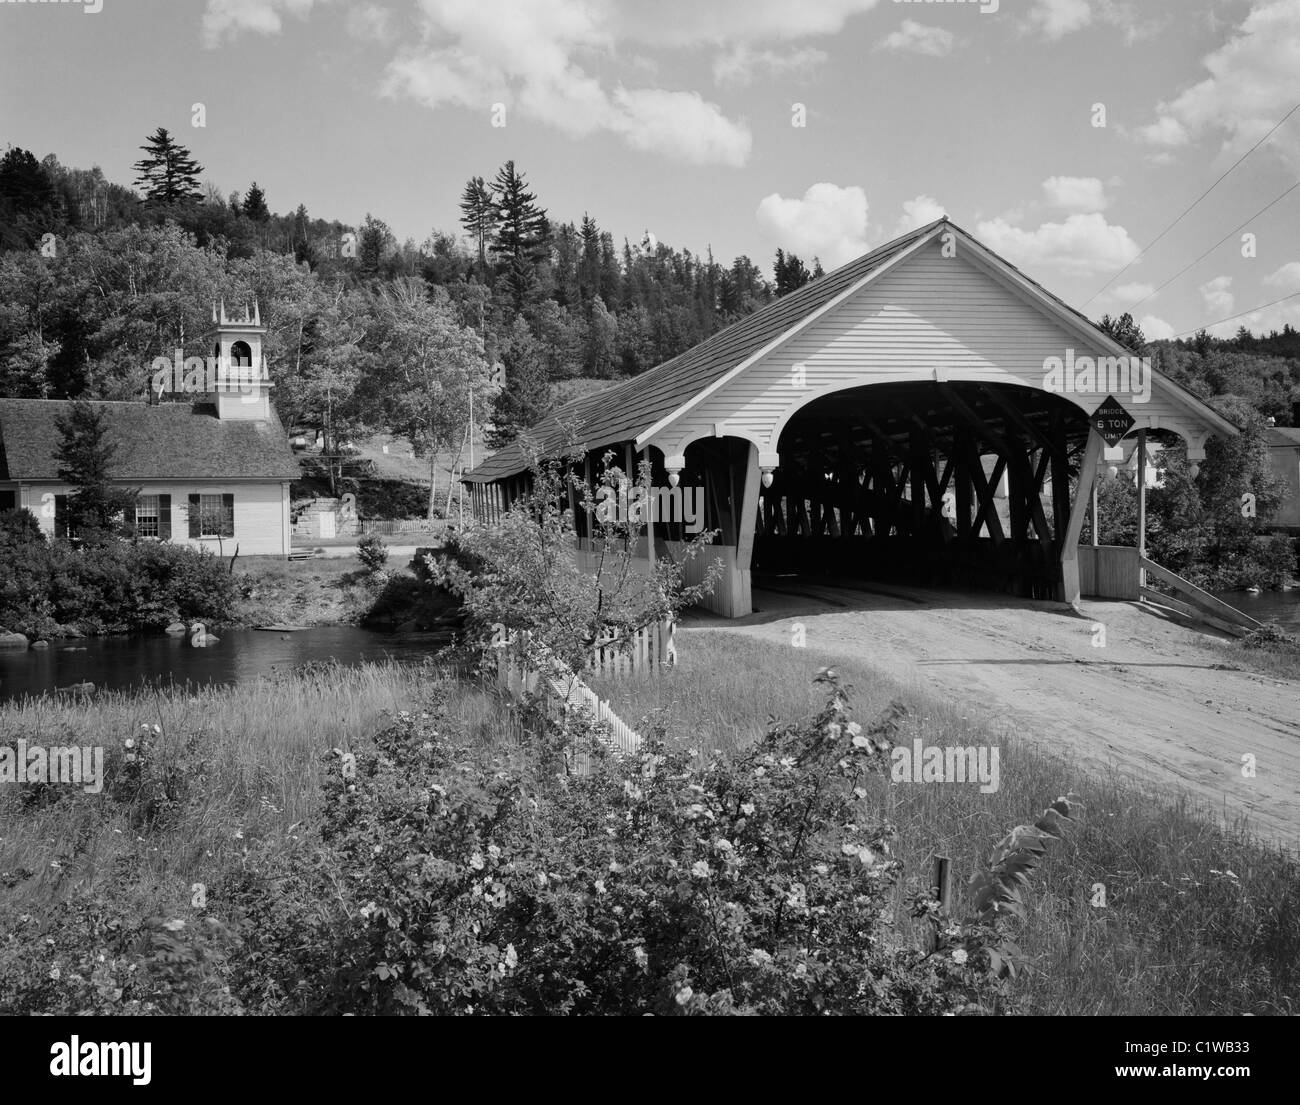 USA, New Hampshire, Stark, überdachte Brücke und Evangelisch-methodistische Kirche Stockfoto